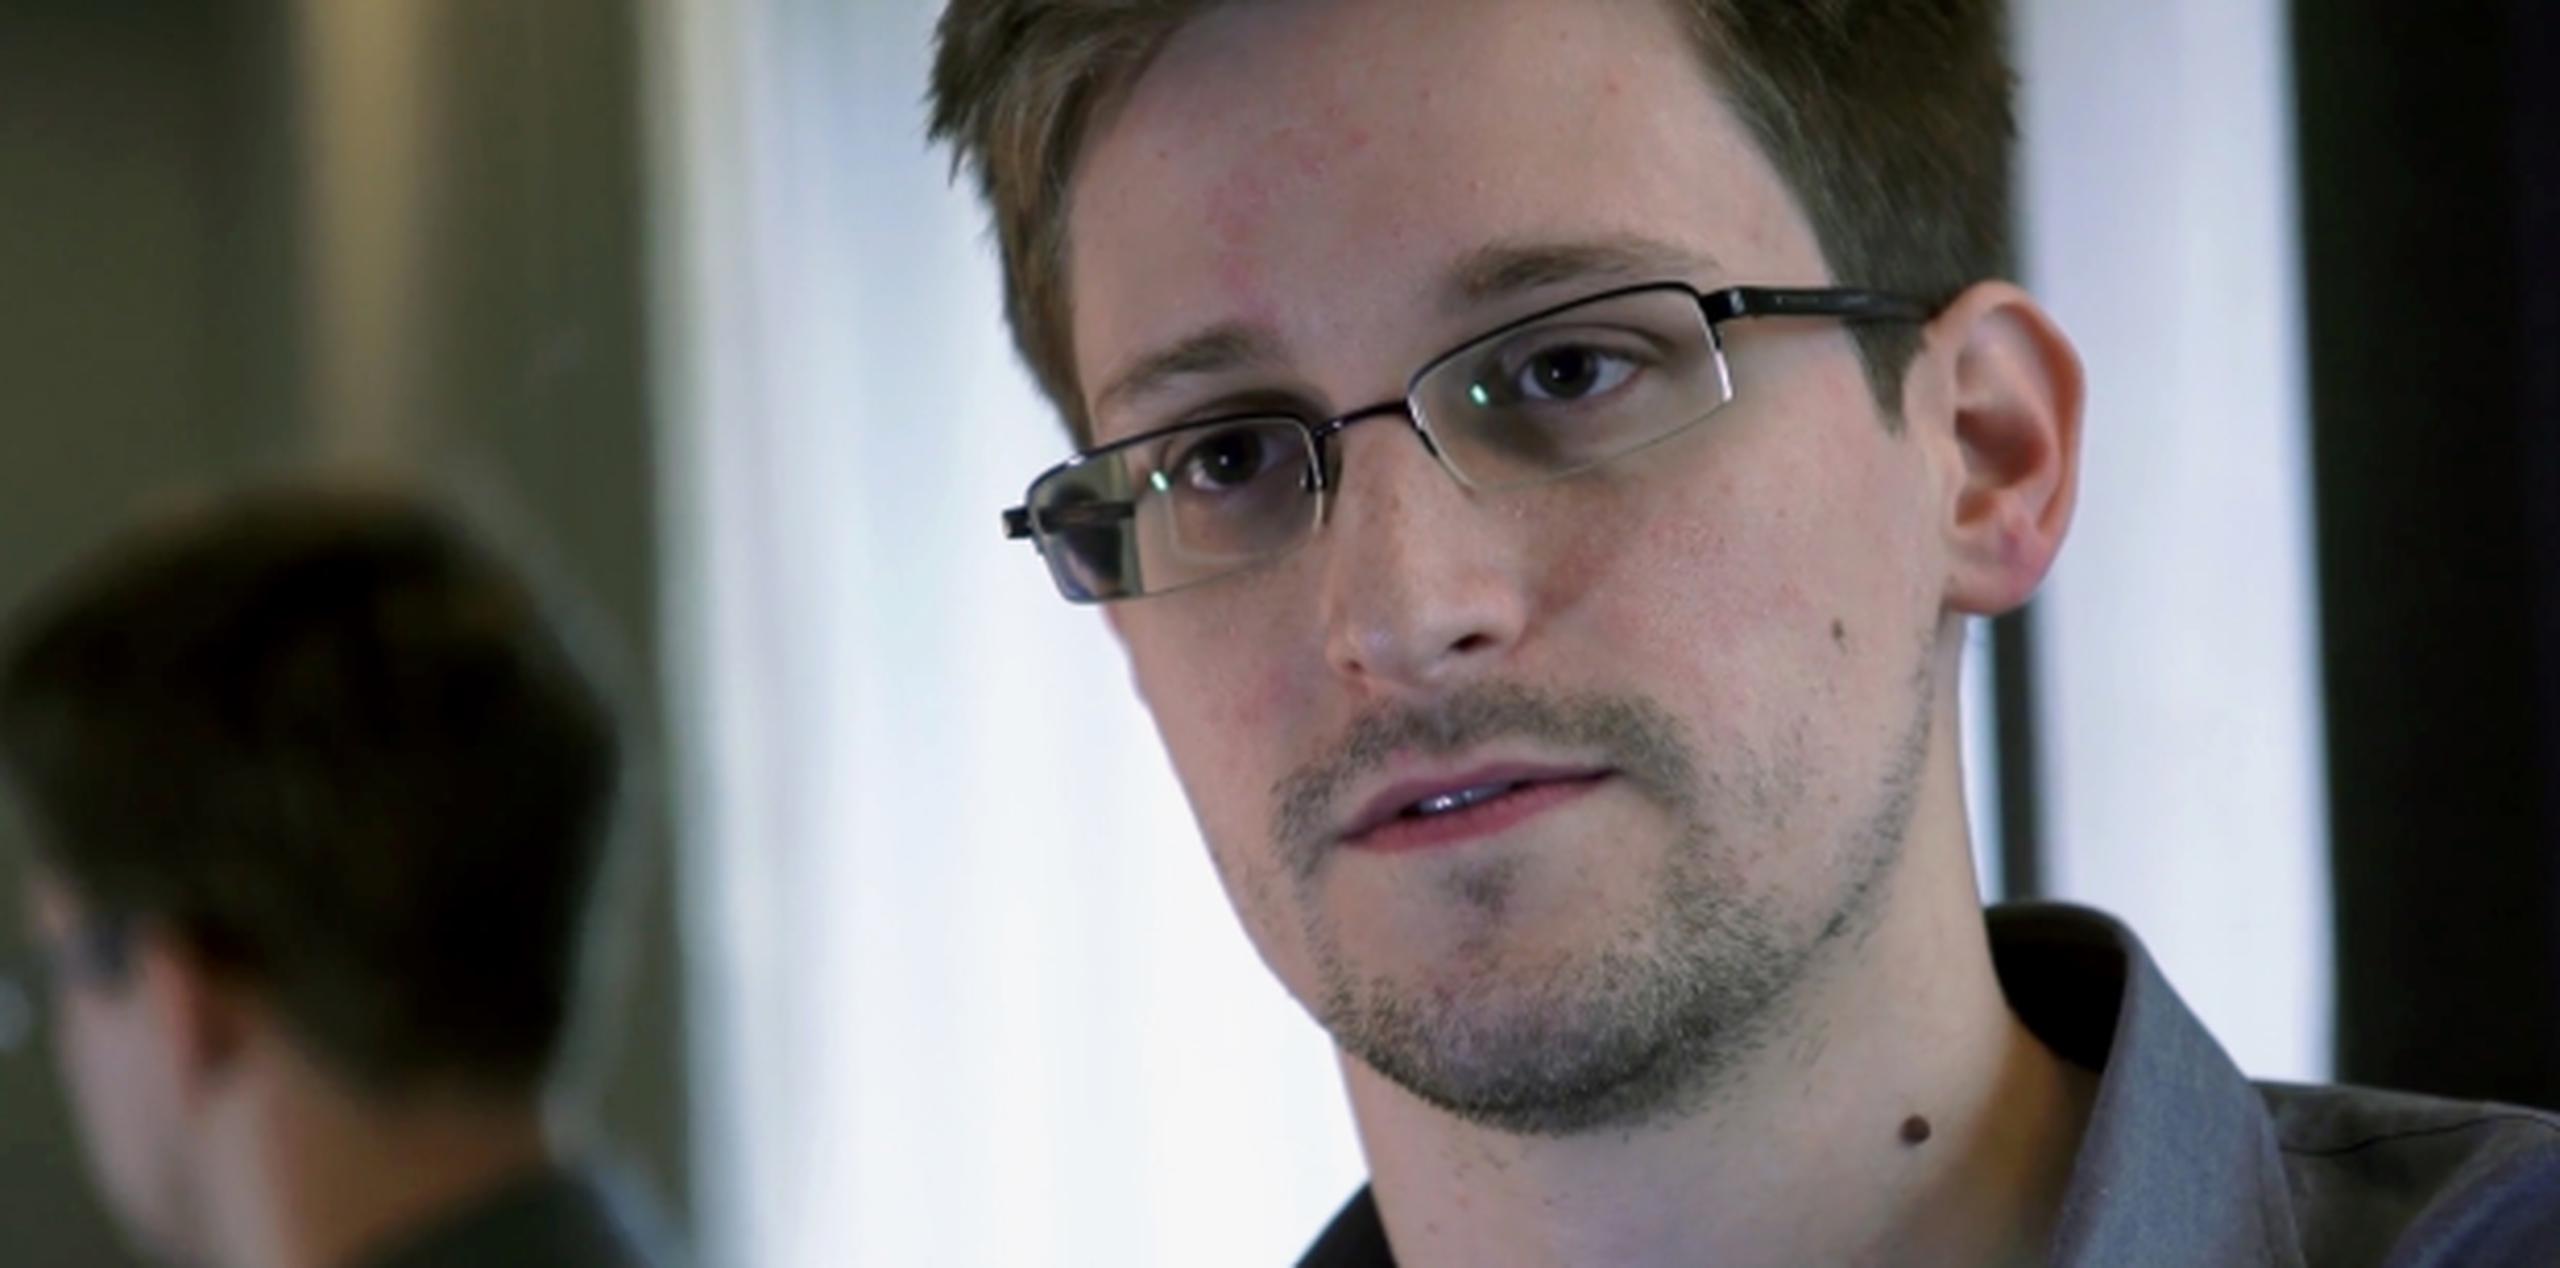 Edward Snowden, exanalista de la CIA, que reveló a "The Guardian" la existencia de dos programas secretos de vigilancia de comunicaciones de EEUU.(Archivo)